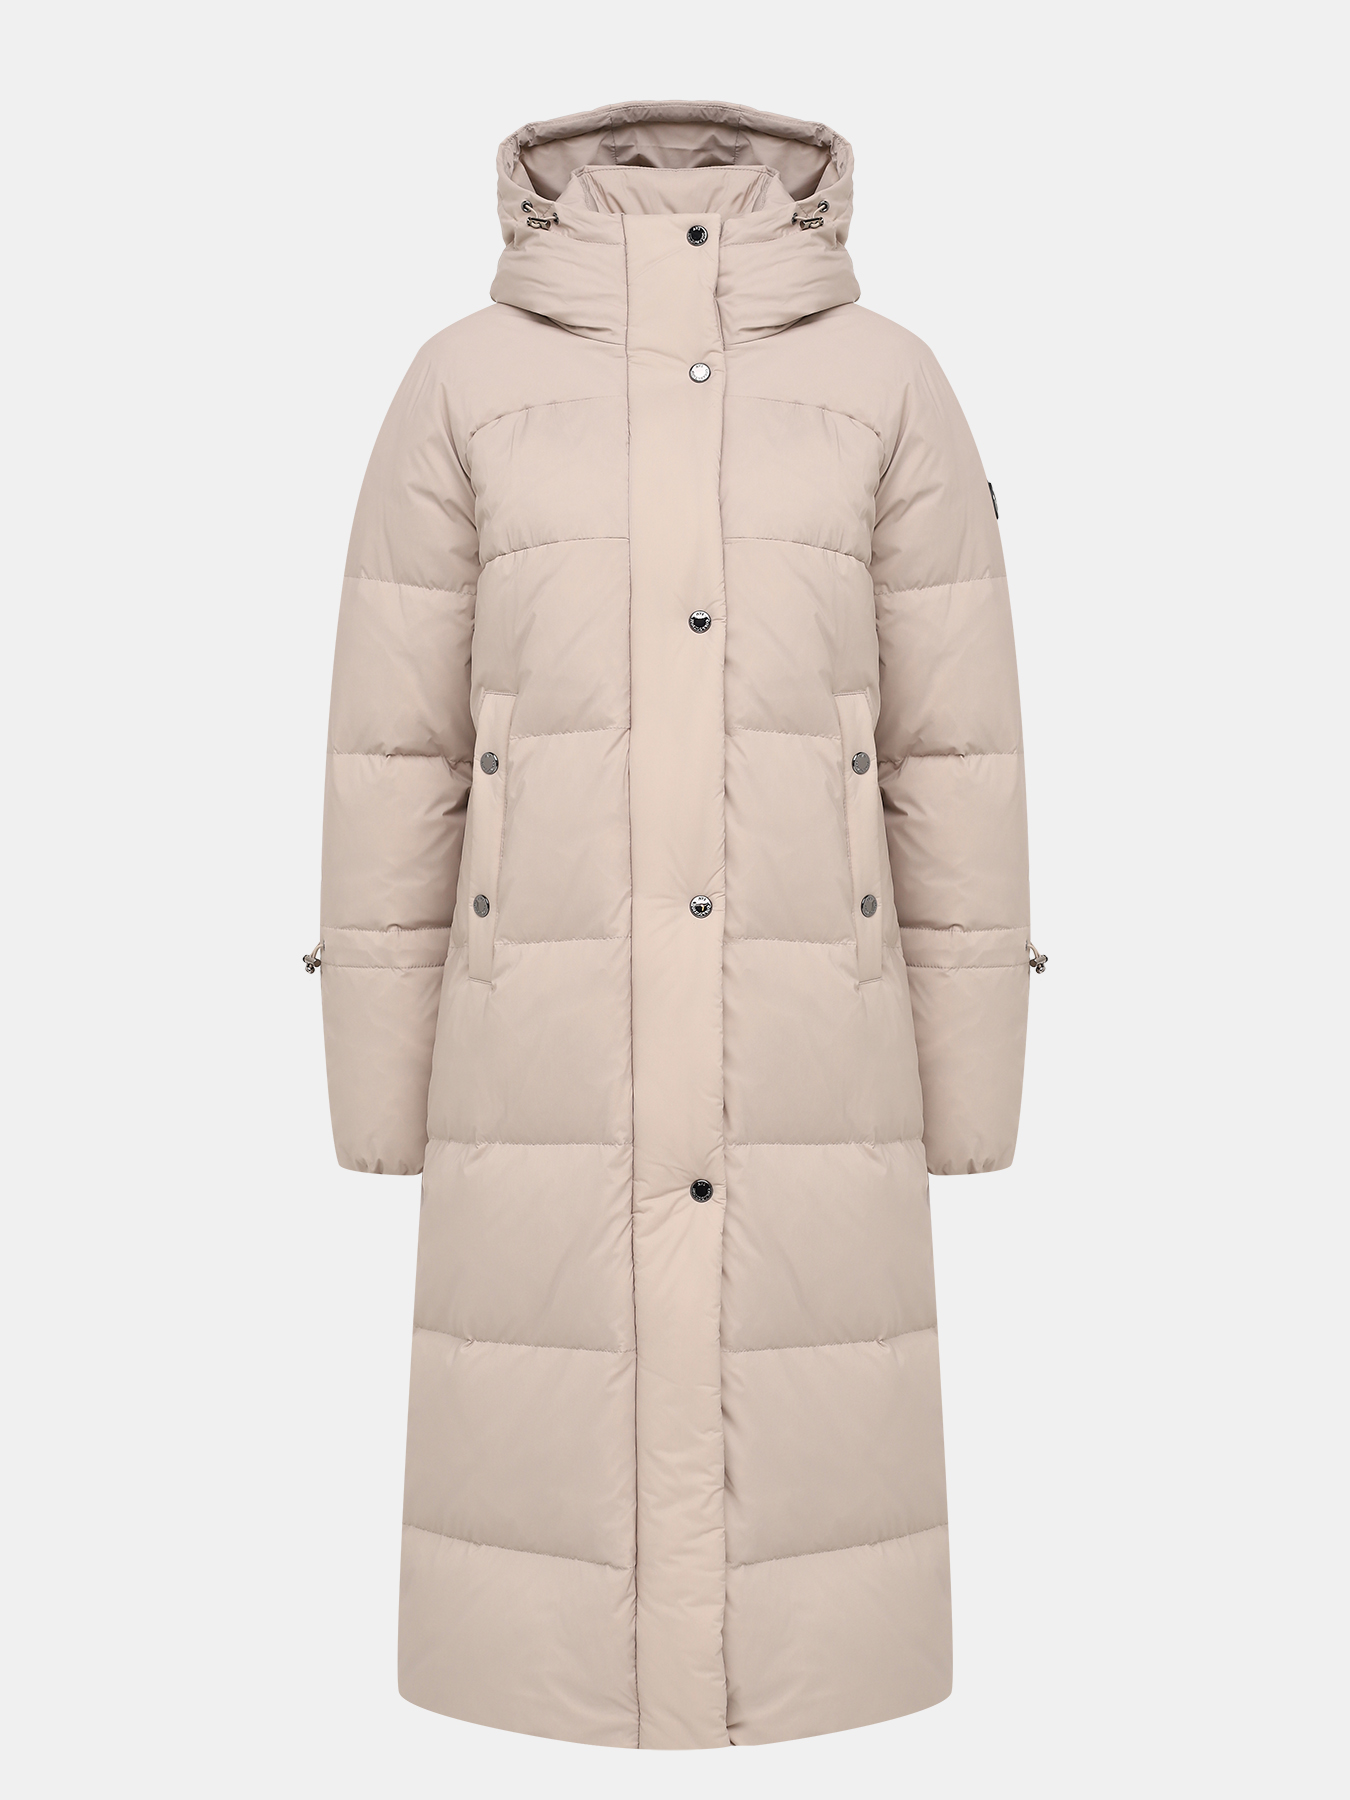 Пальто зимнее AVI 433604-020, цвет бежевый, размер 44